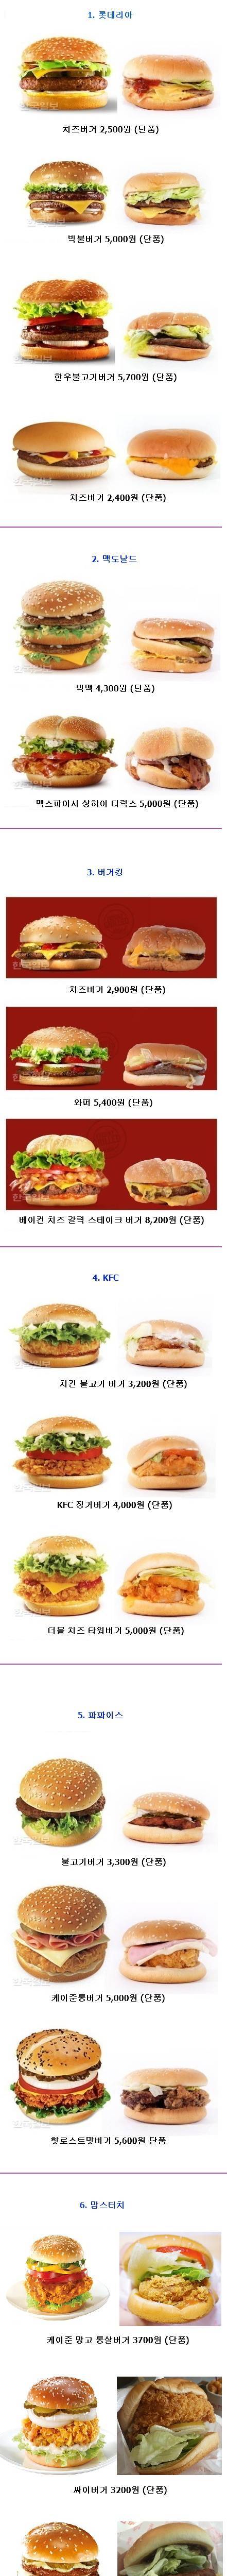 햄버거 크기비교 . jpg